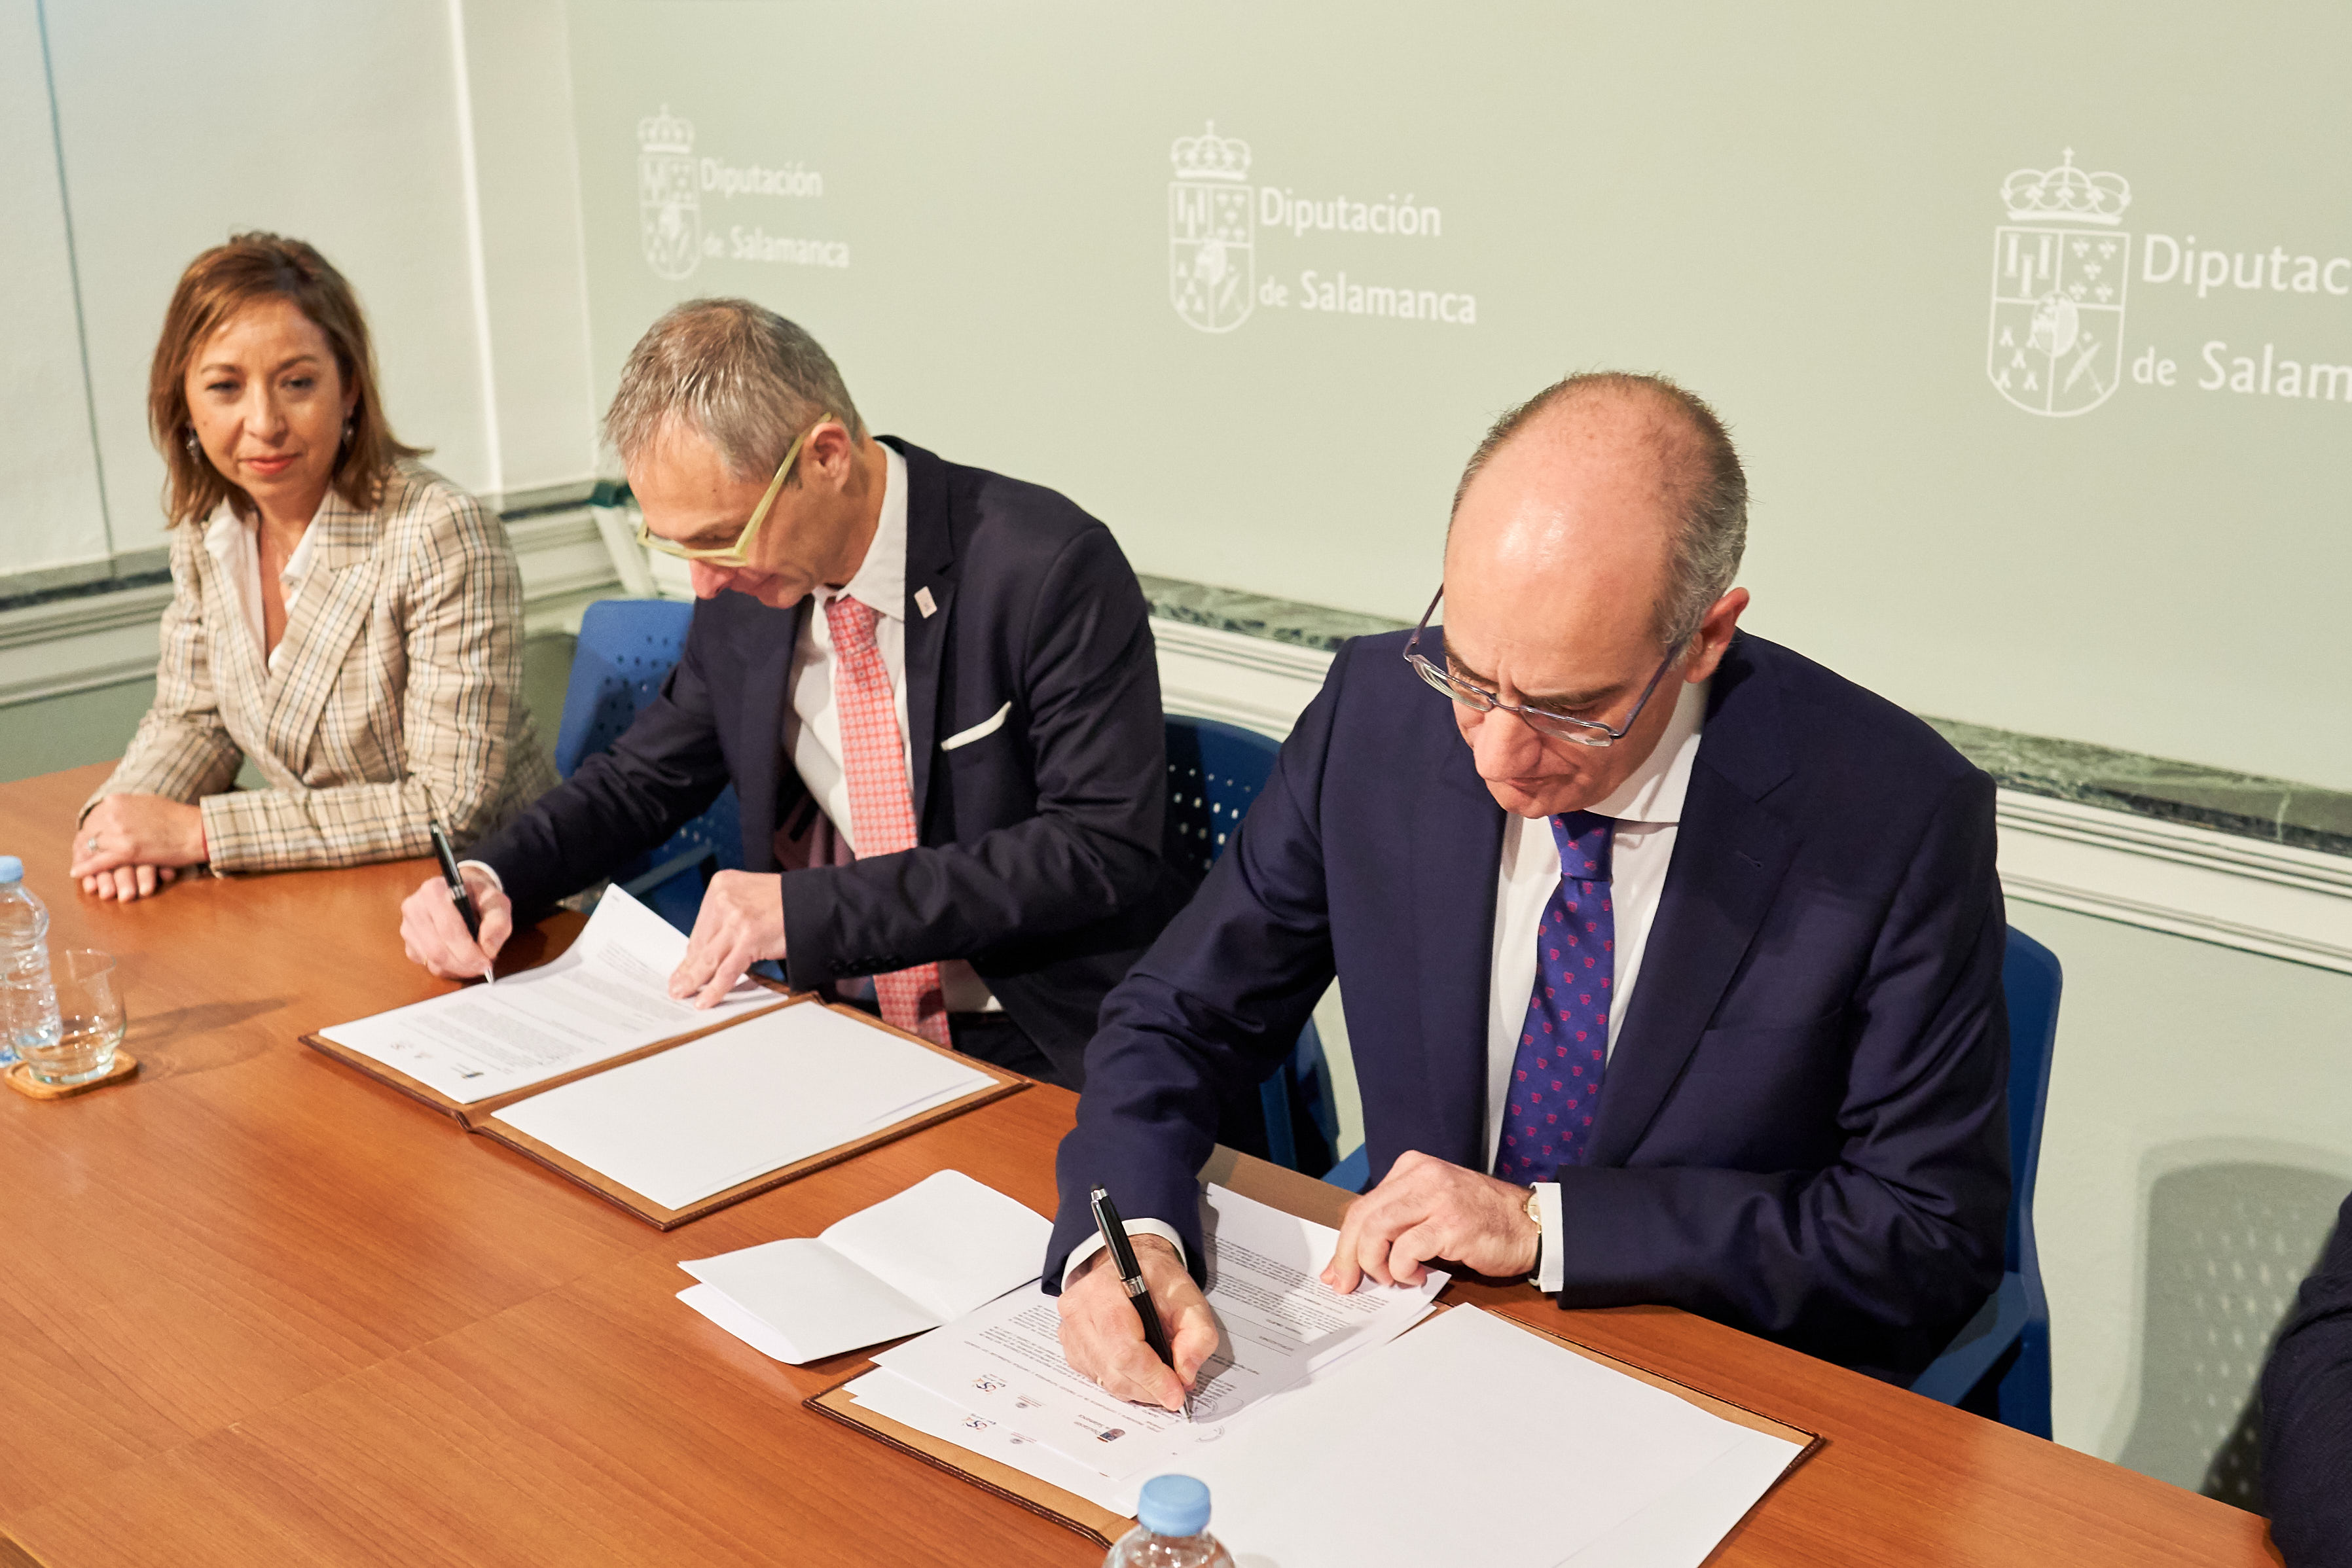 La Universidad de Salamanca y la Diputación firman el convenio para la puesta en marcha del Plan de Empleo Universitario en la provincia